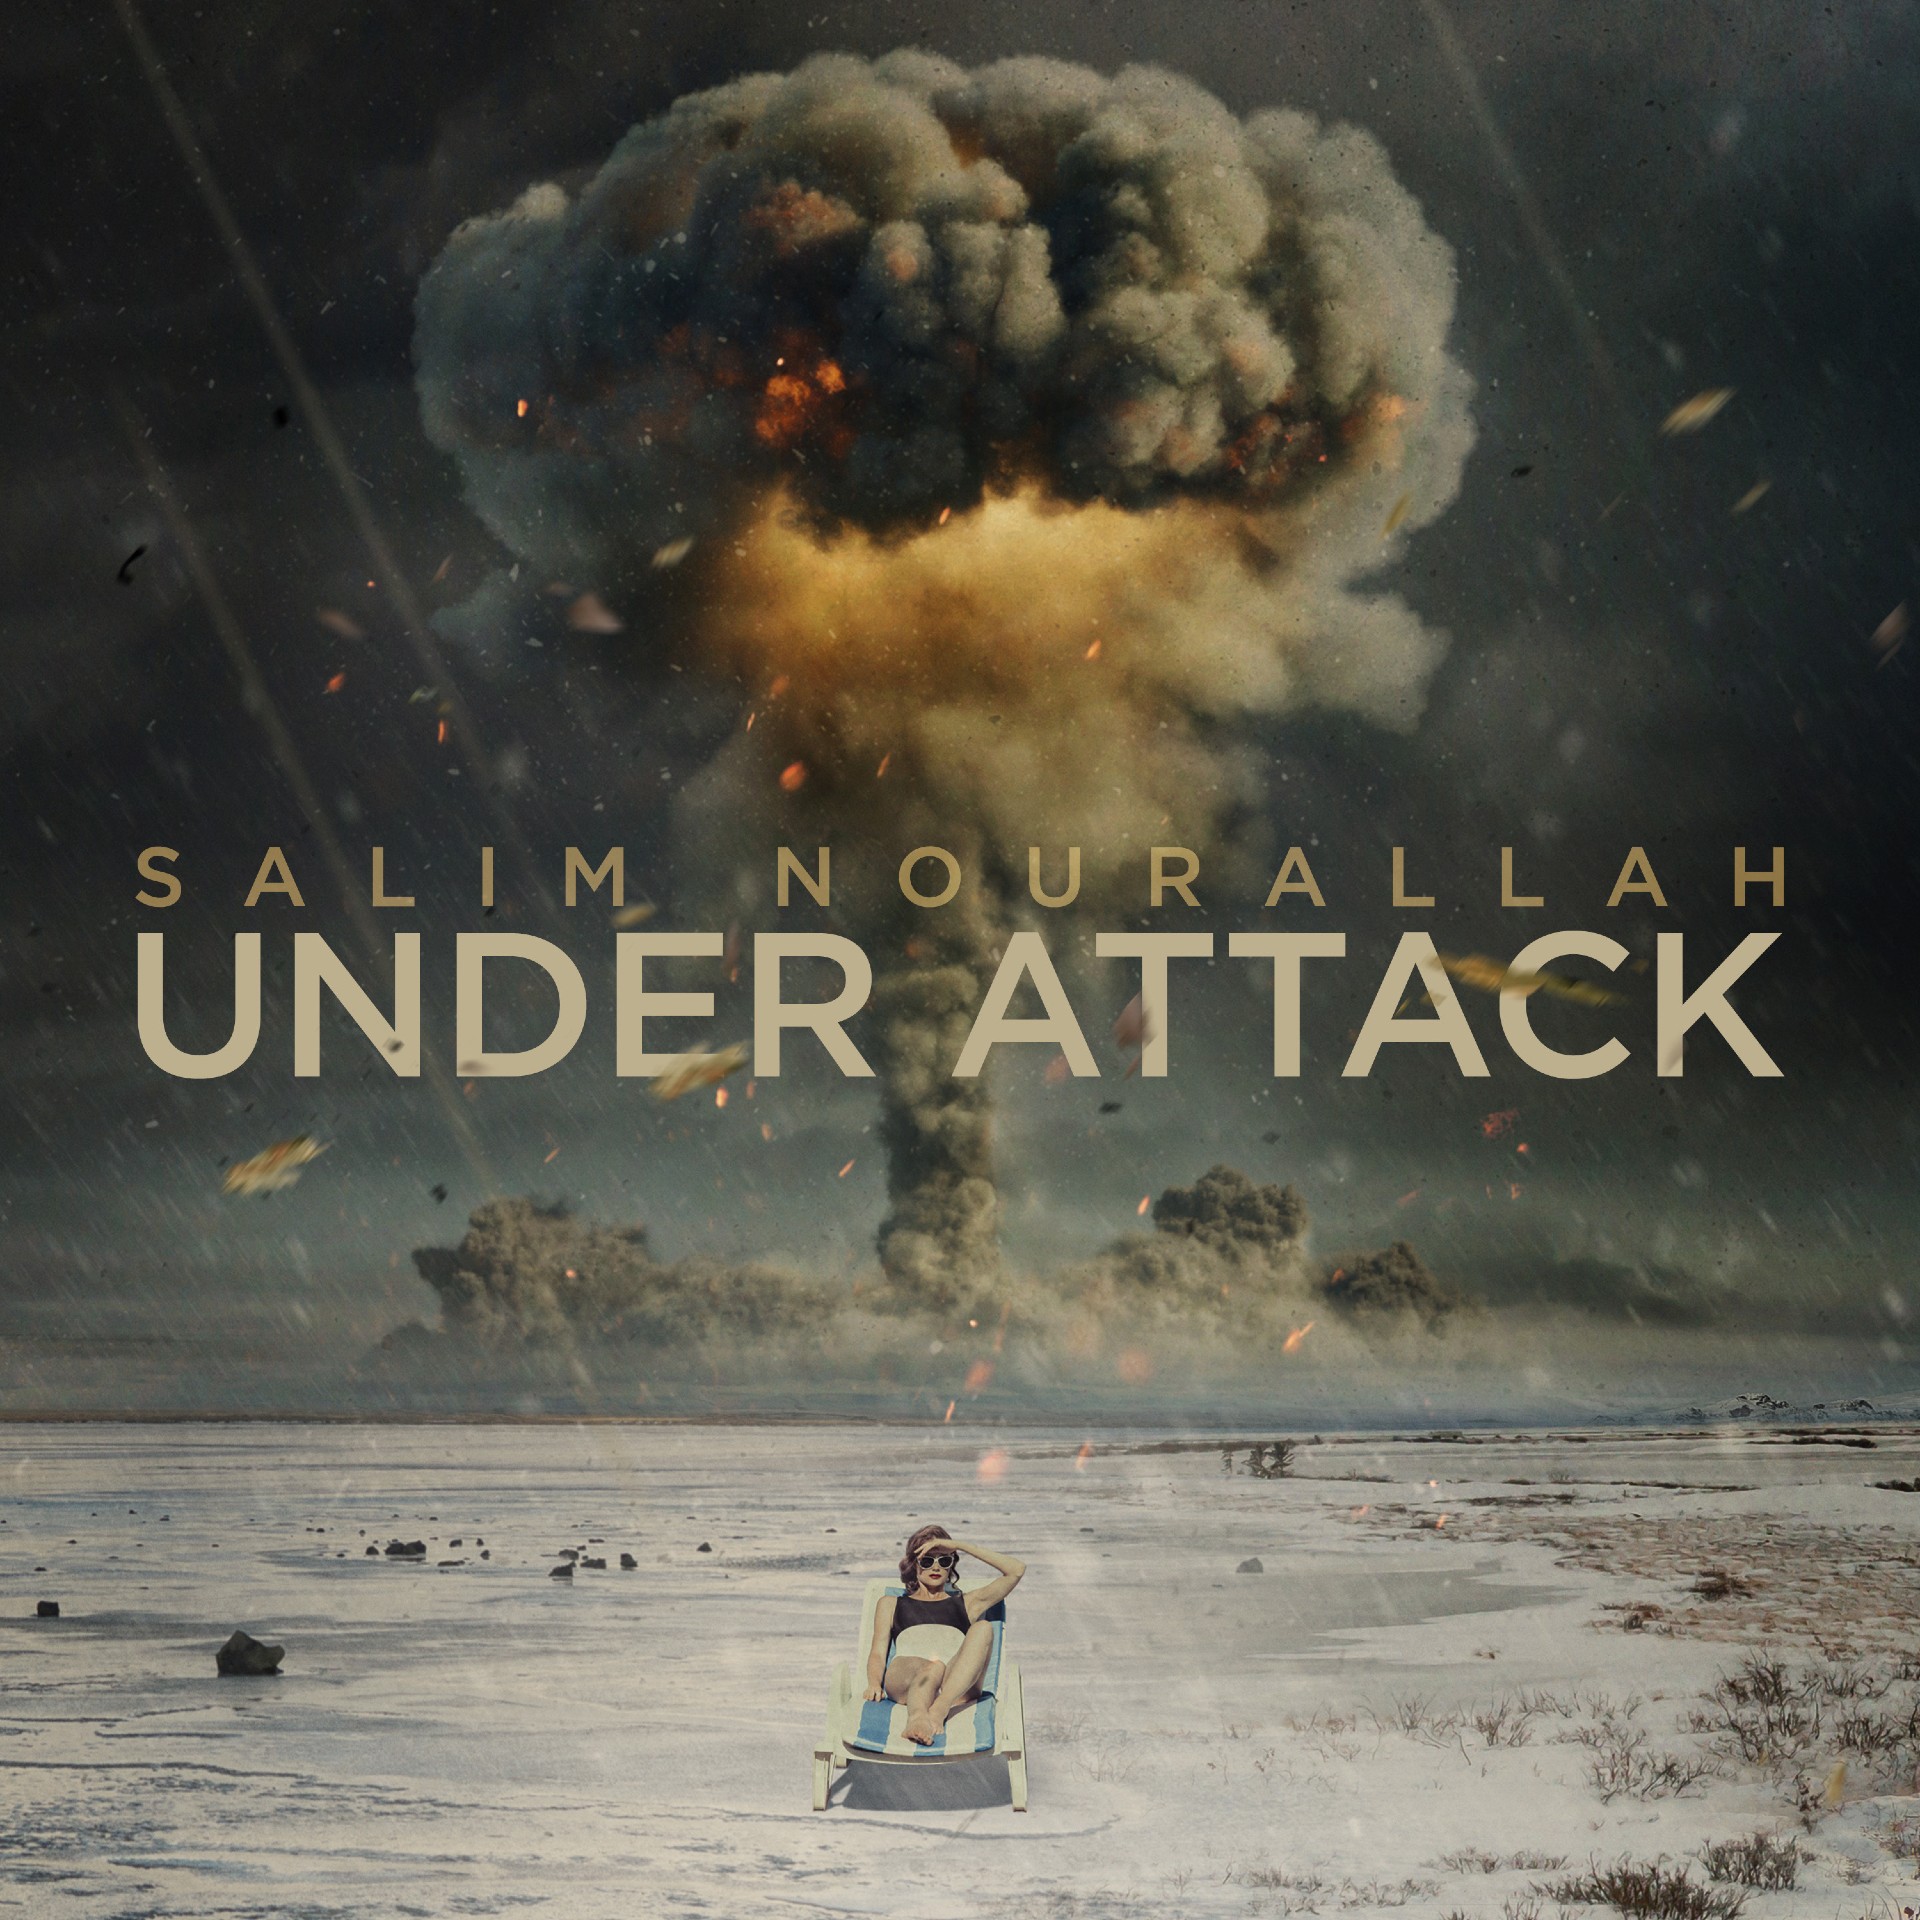 Salim Nourallah “Under Attack” single artwork